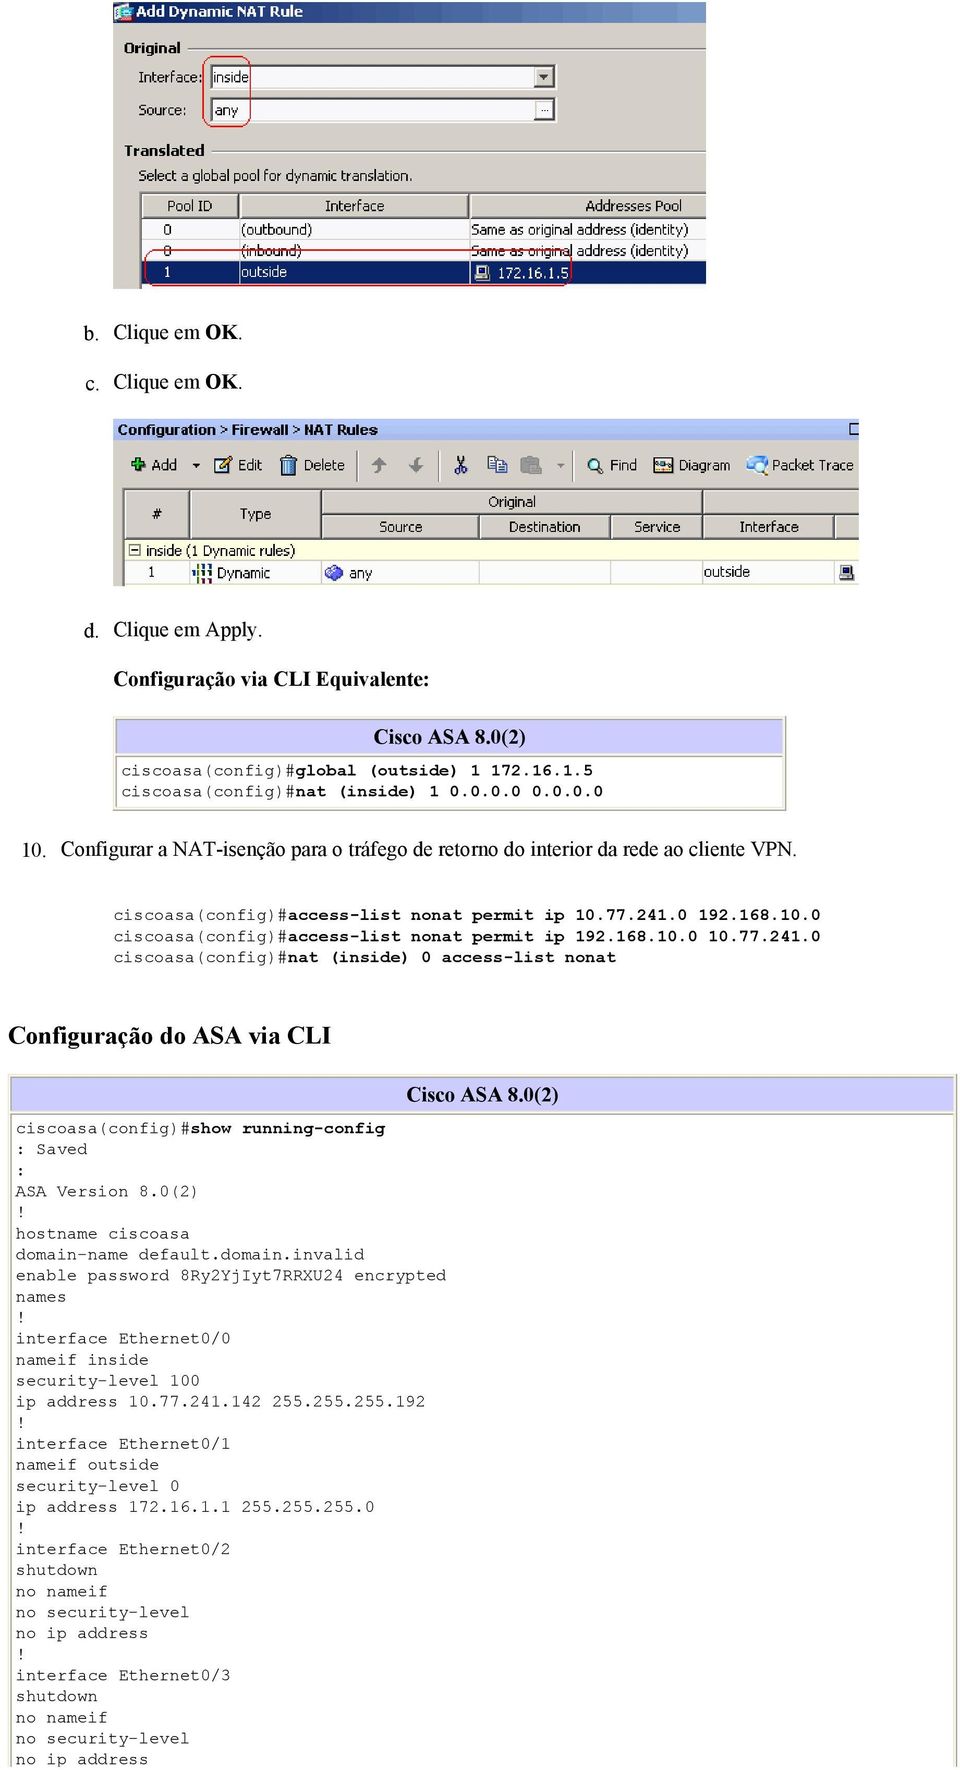 168.10.0 10.77.241.0 ciscoasa(config)#nat (inside) 0 access-list nonat Configuração do ASA via CLI ciscoasa(config)#show running-config : Saved : ASA Version 8.